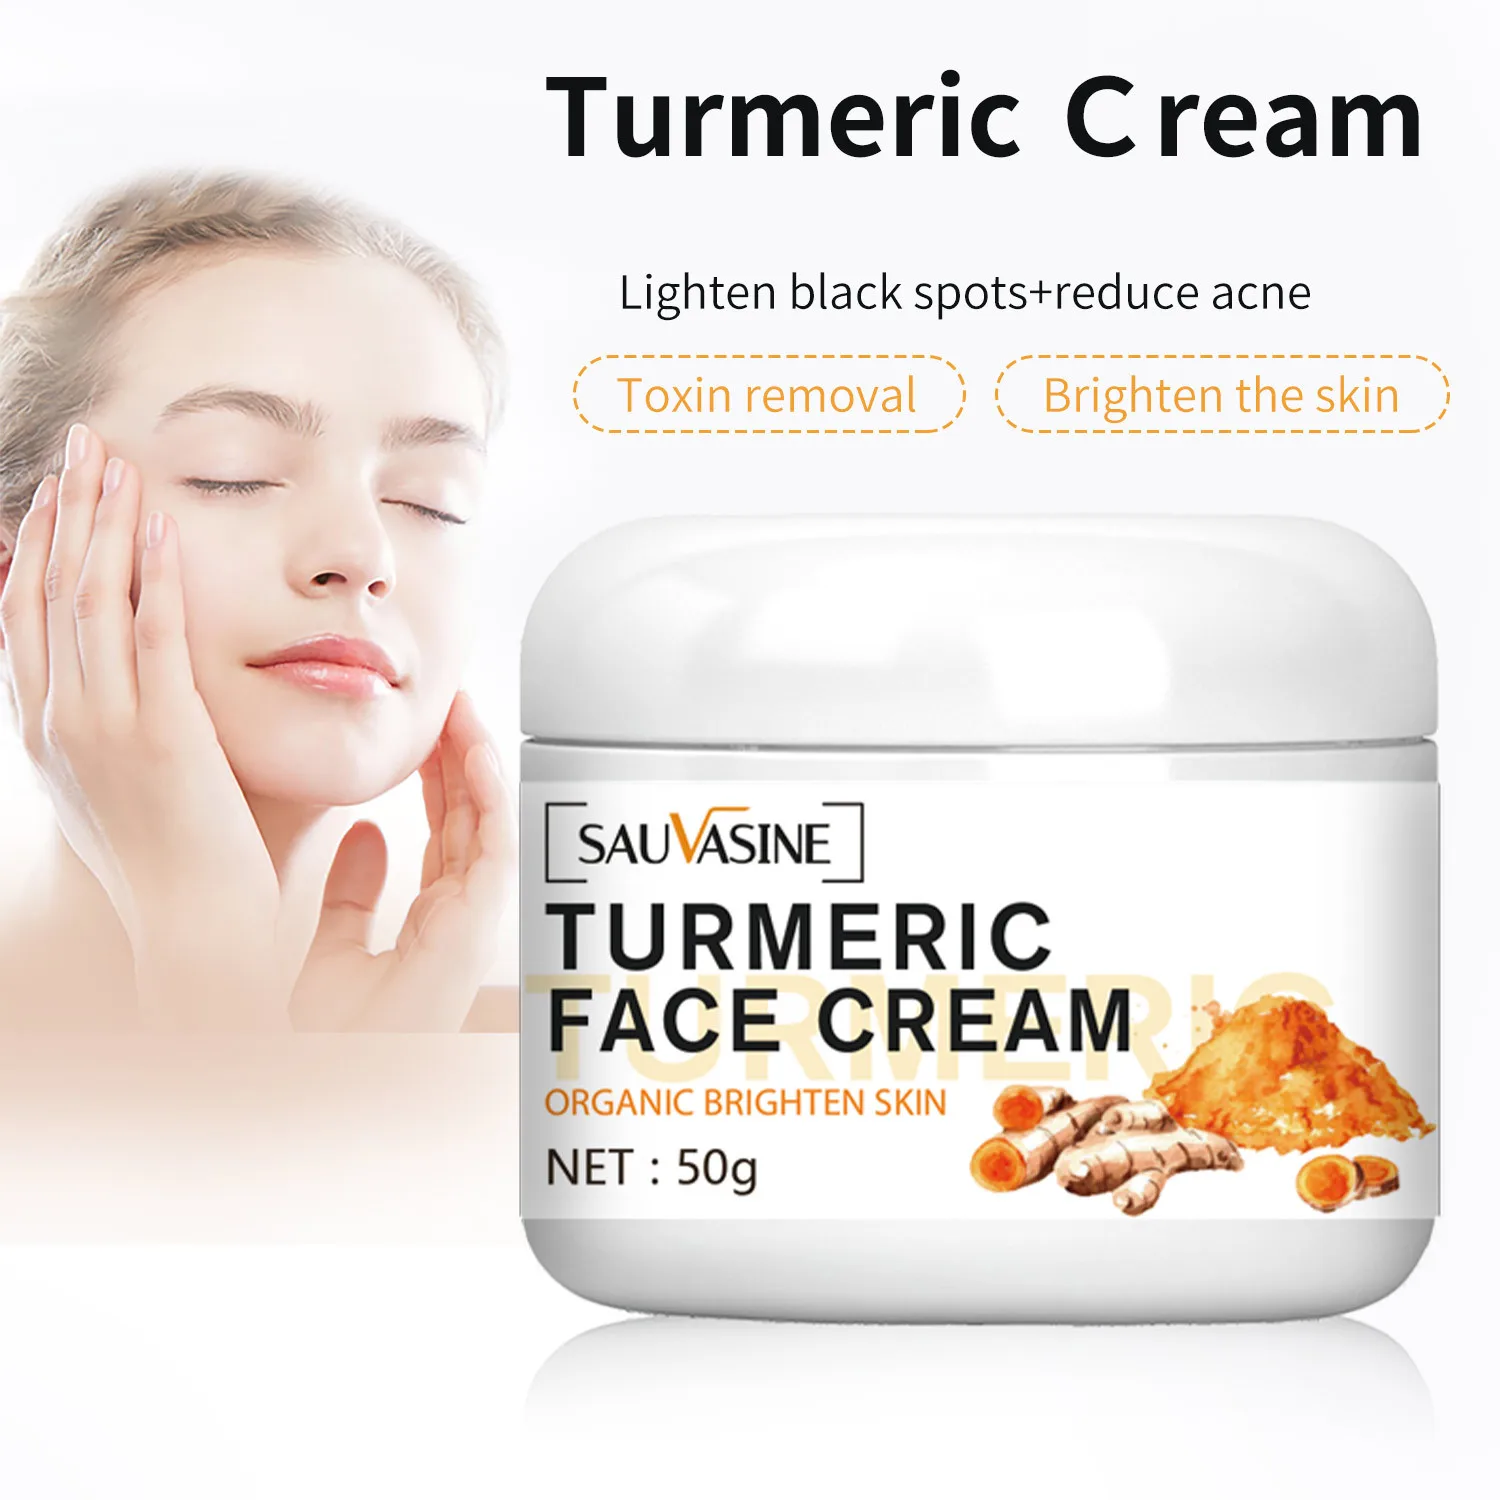 New Turmeric Face Whitening Cream for Dark Skin Remove Acne Lighten Dark Spots Moisturizing Brightening Cream for Face Skin Care